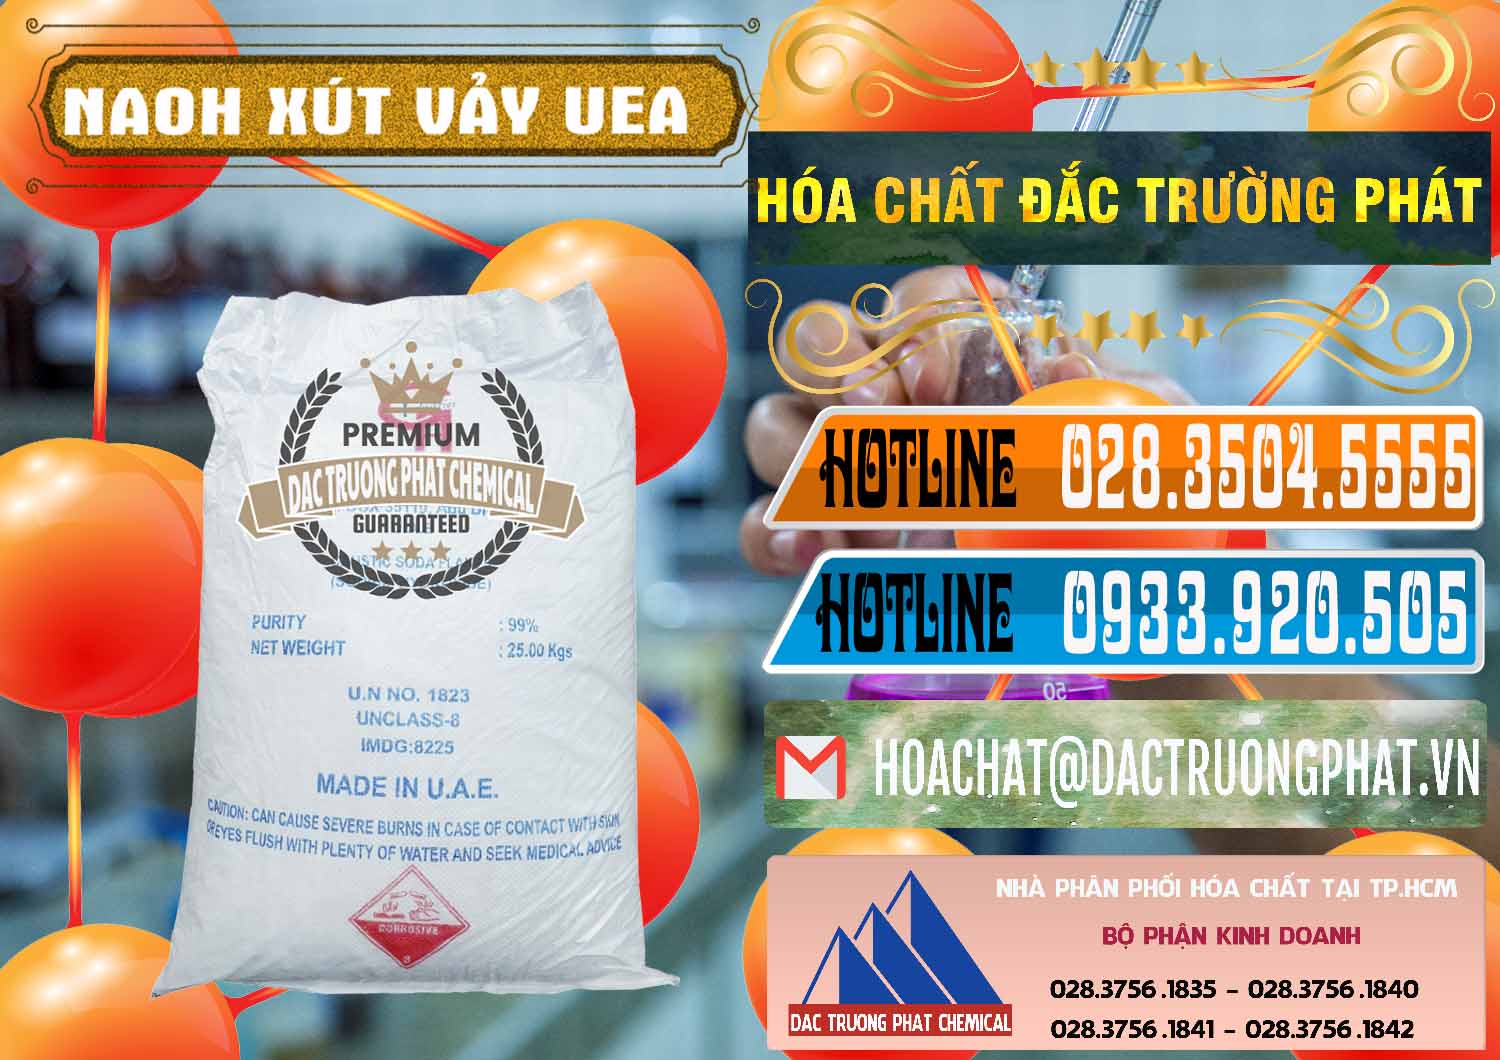 Cty chuyên nhập khẩu & bán Xút Vảy - NaOH Vảy UAE Iran - 0432 - Cty chuyên bán - cung cấp hóa chất tại TP.HCM - stmp.net